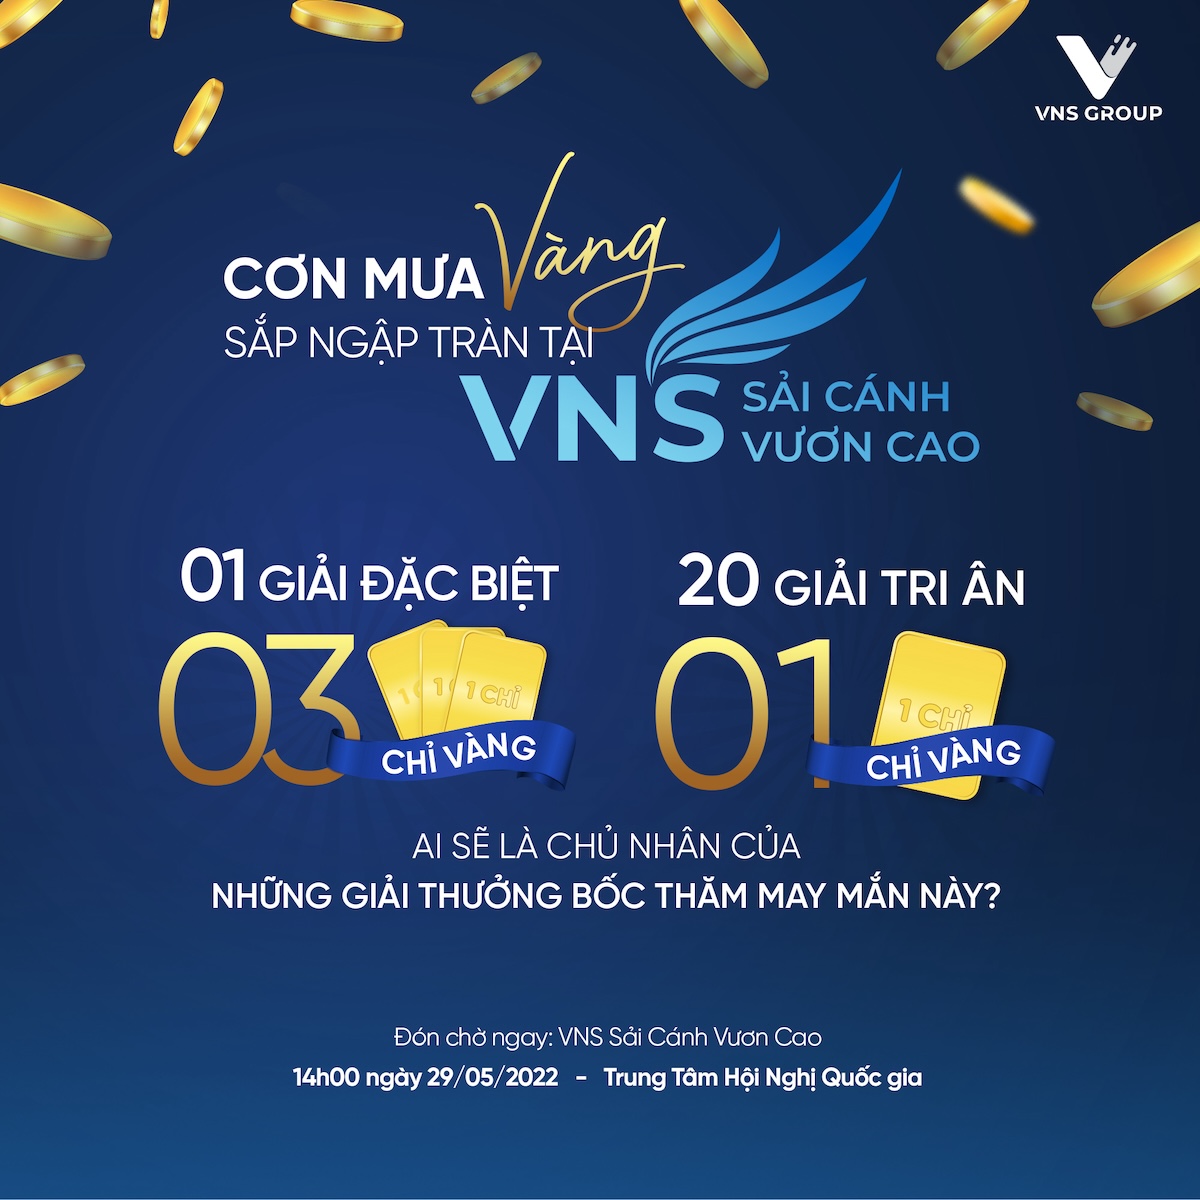 Afamily.vn – VNS Group tặng 23 chỉ vàng 9999 nhân dịp tri ân khách hàng